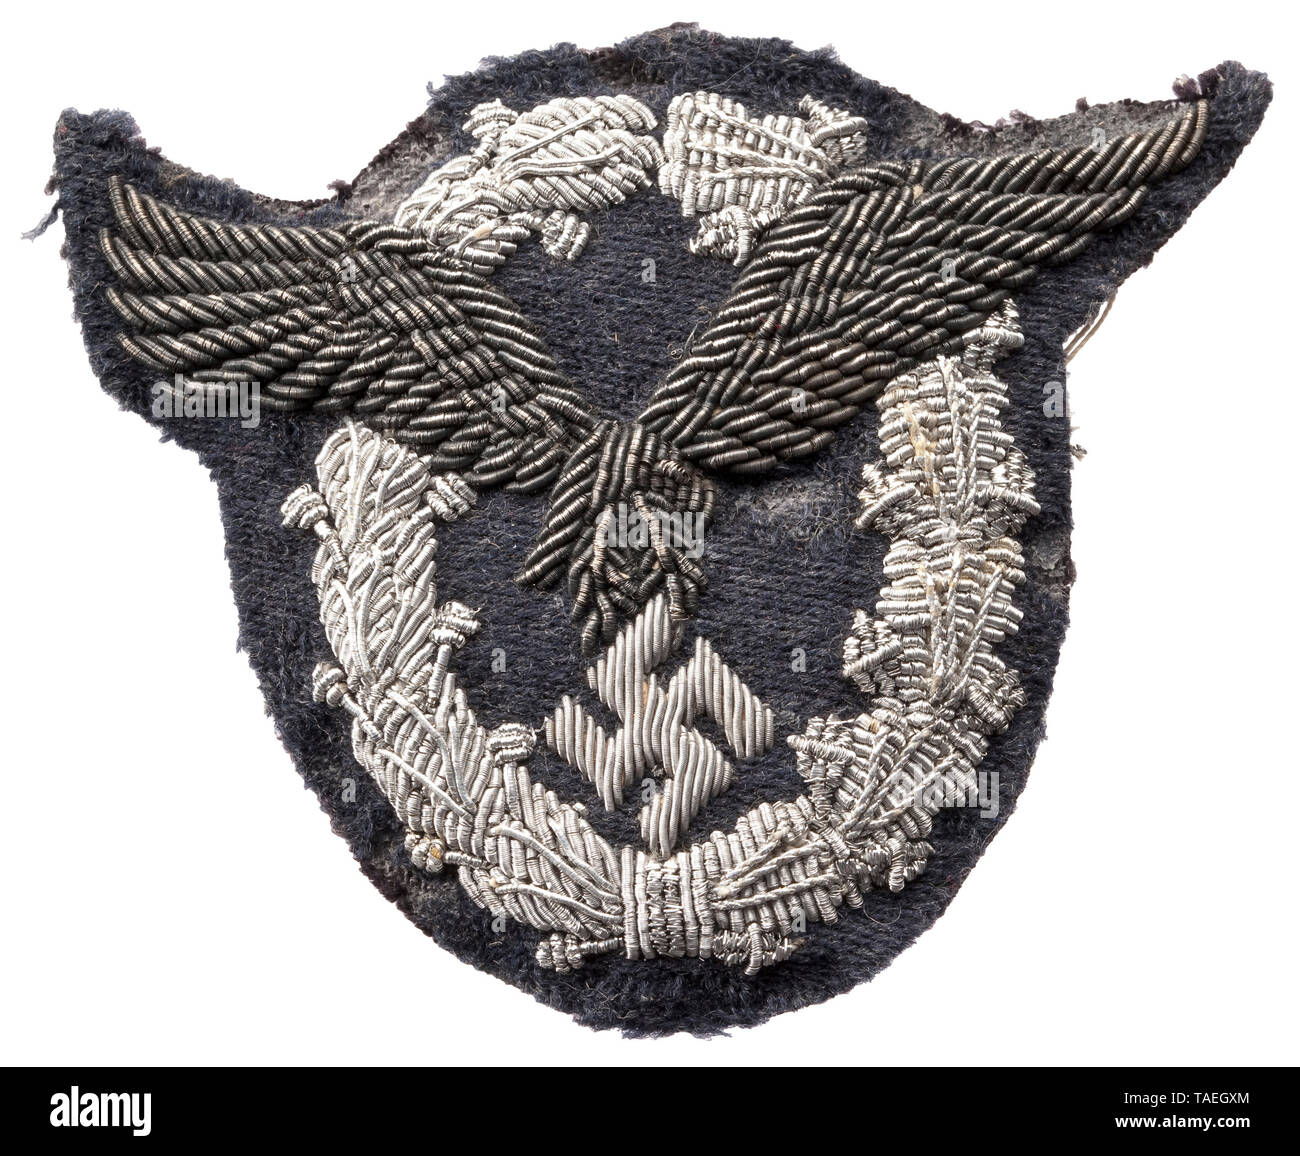 Ecusson - Aviateur Armée Insignes militaire - patches brode